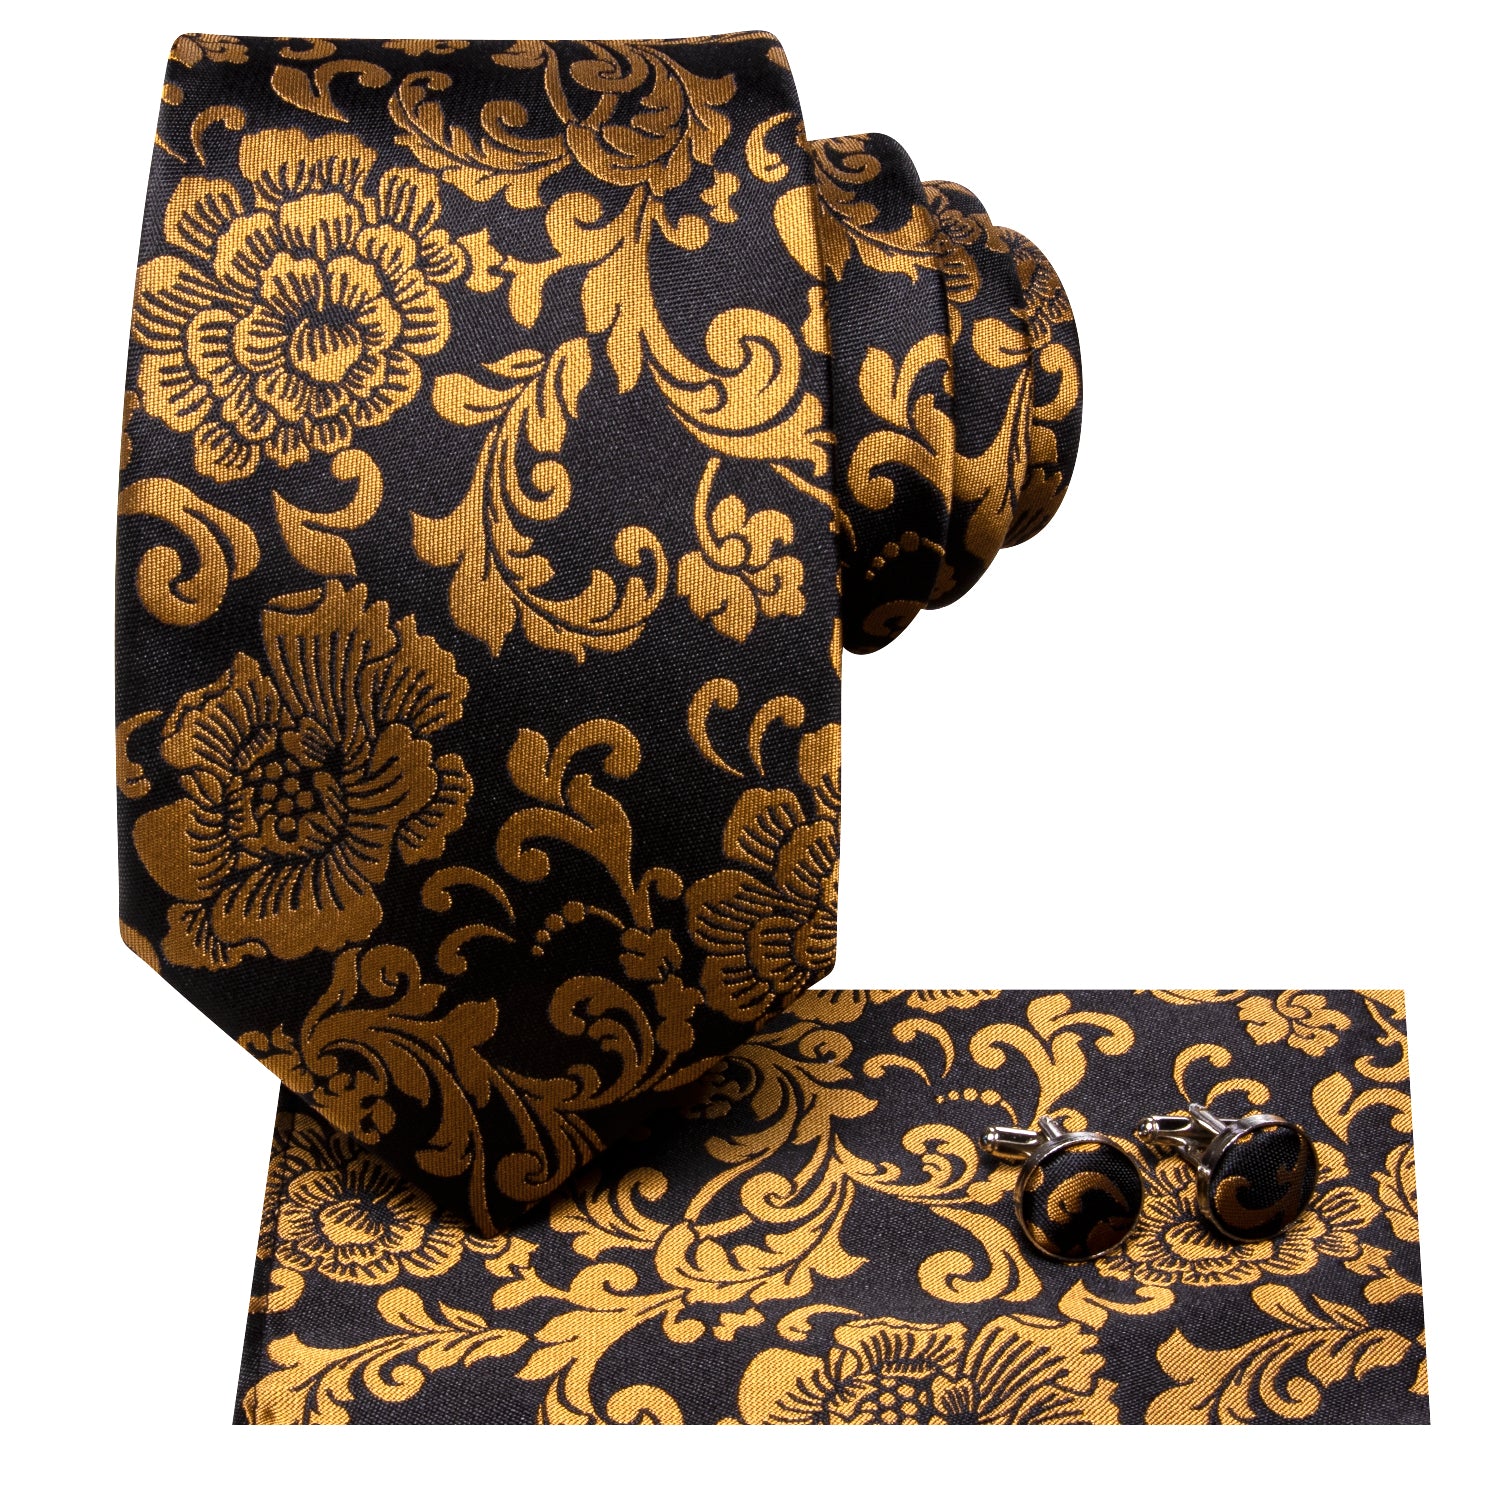 Hi-Tie Black Golden Floral Men's Tie Pocket Square Cufflinks Set